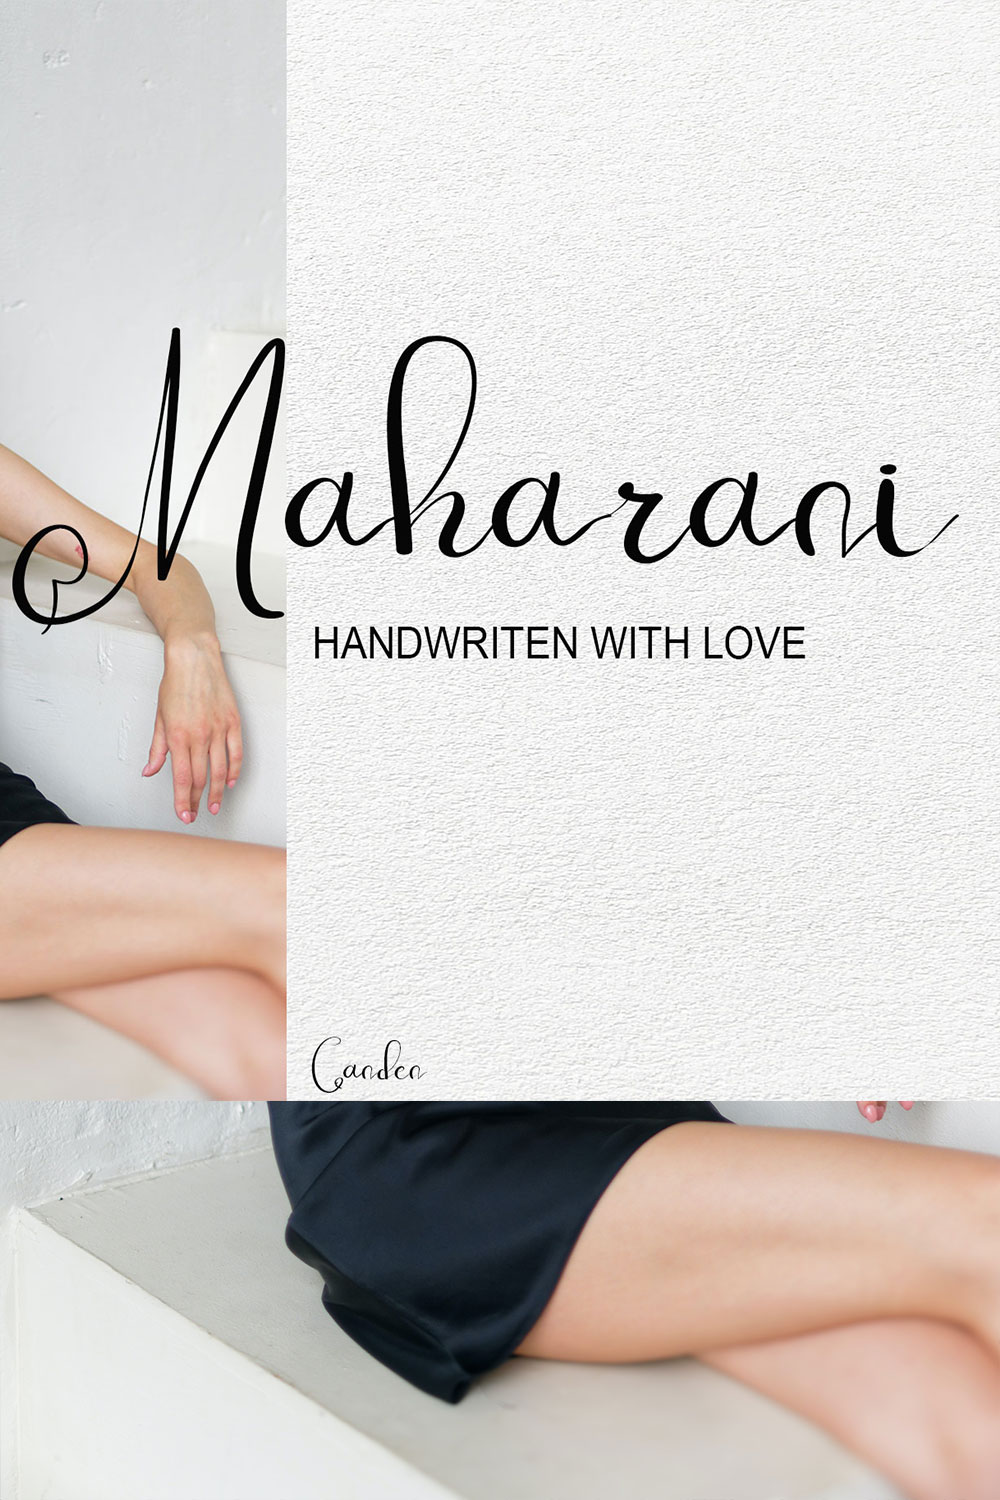 Maharani Sans Serif Font Pinterest image.